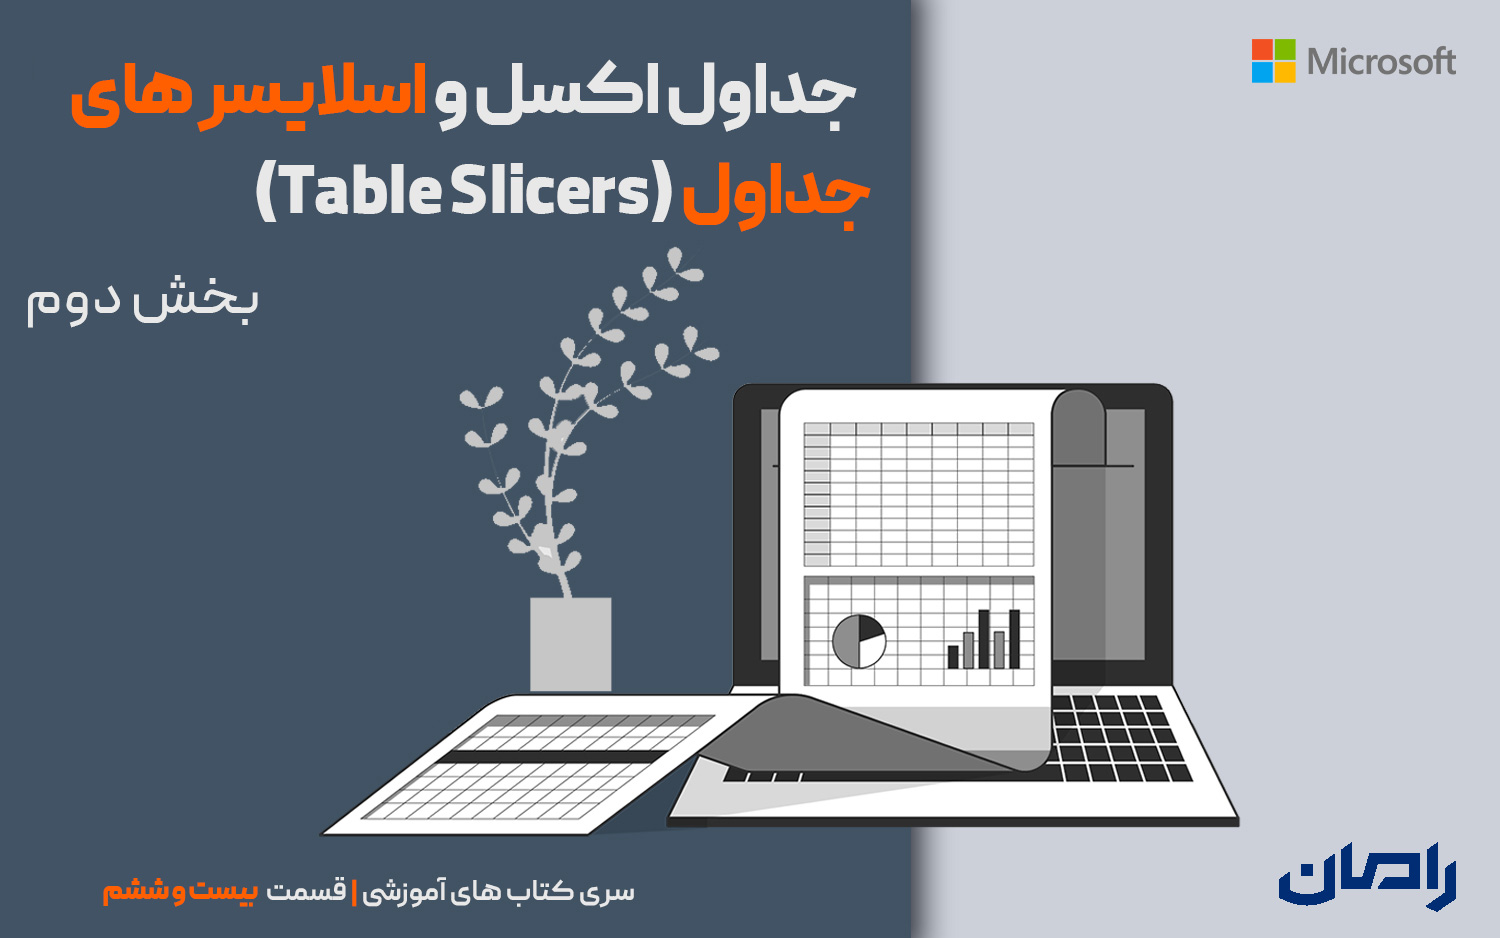 جداول اکسل و اسلایسرهای جداول (Table Slicers) – بخش2